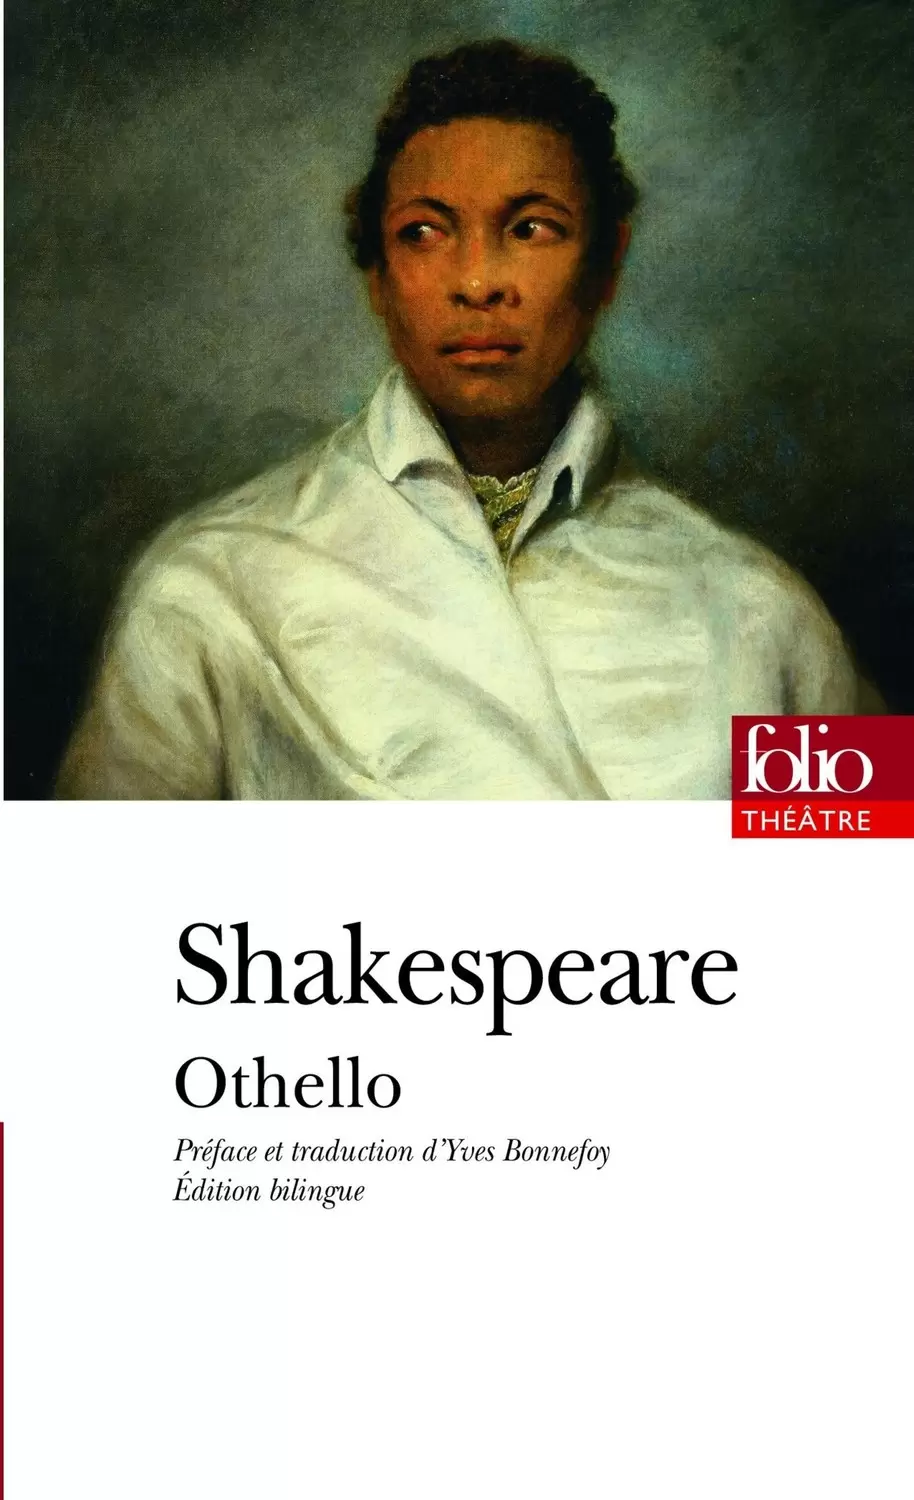 William shakespeare - Othello